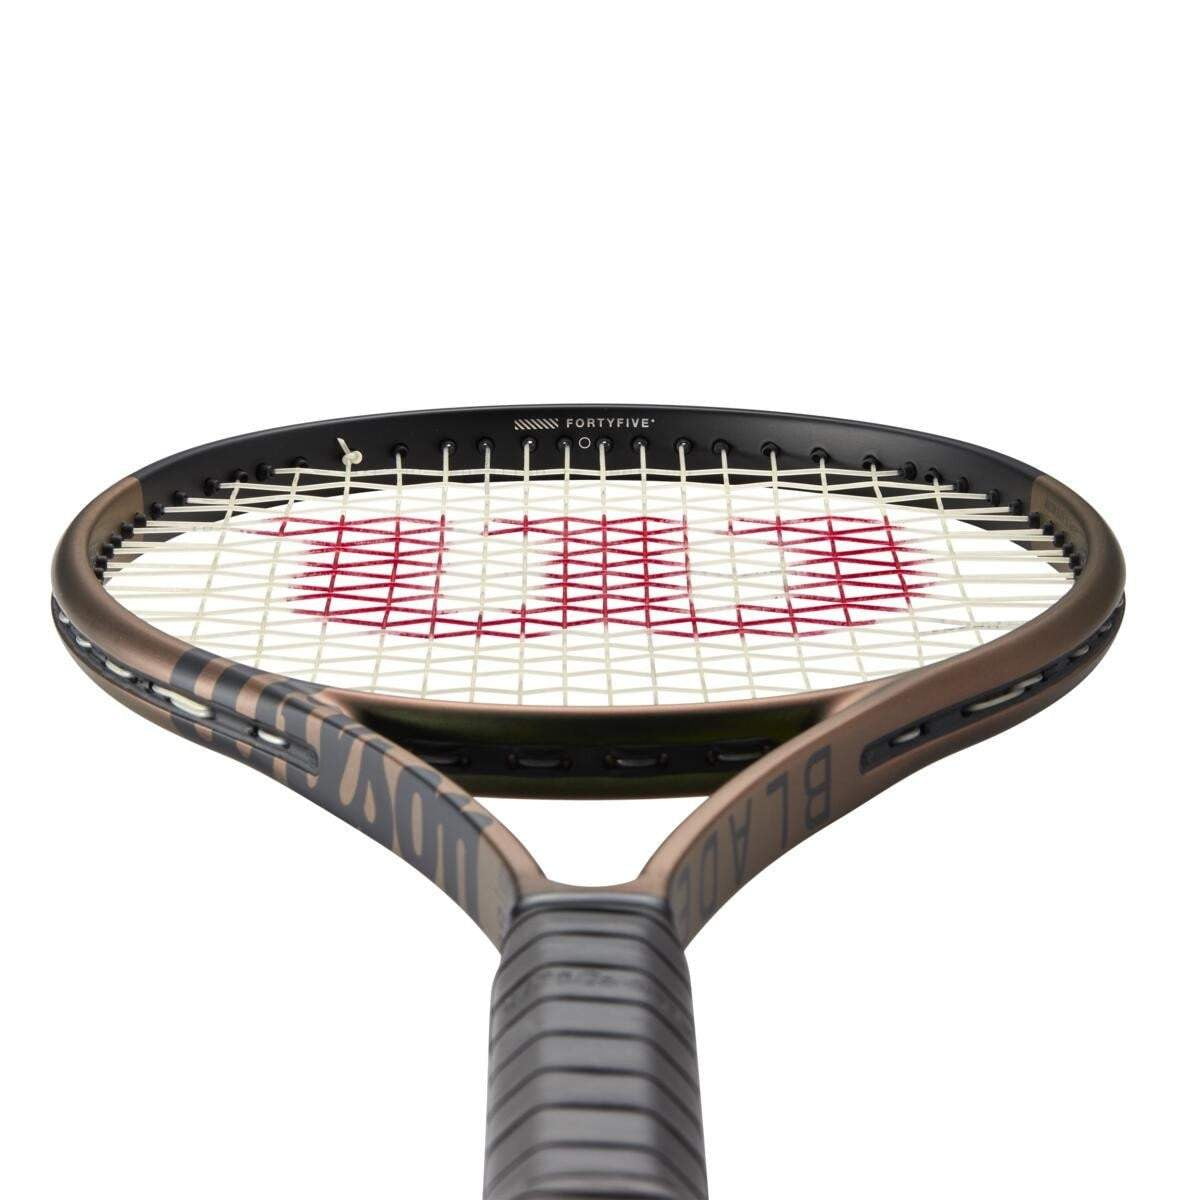 Wilson Blade 98 18x20 V8 Tennis Racquet 2021 - Tennis Racquet - Wilson - ATR Sports